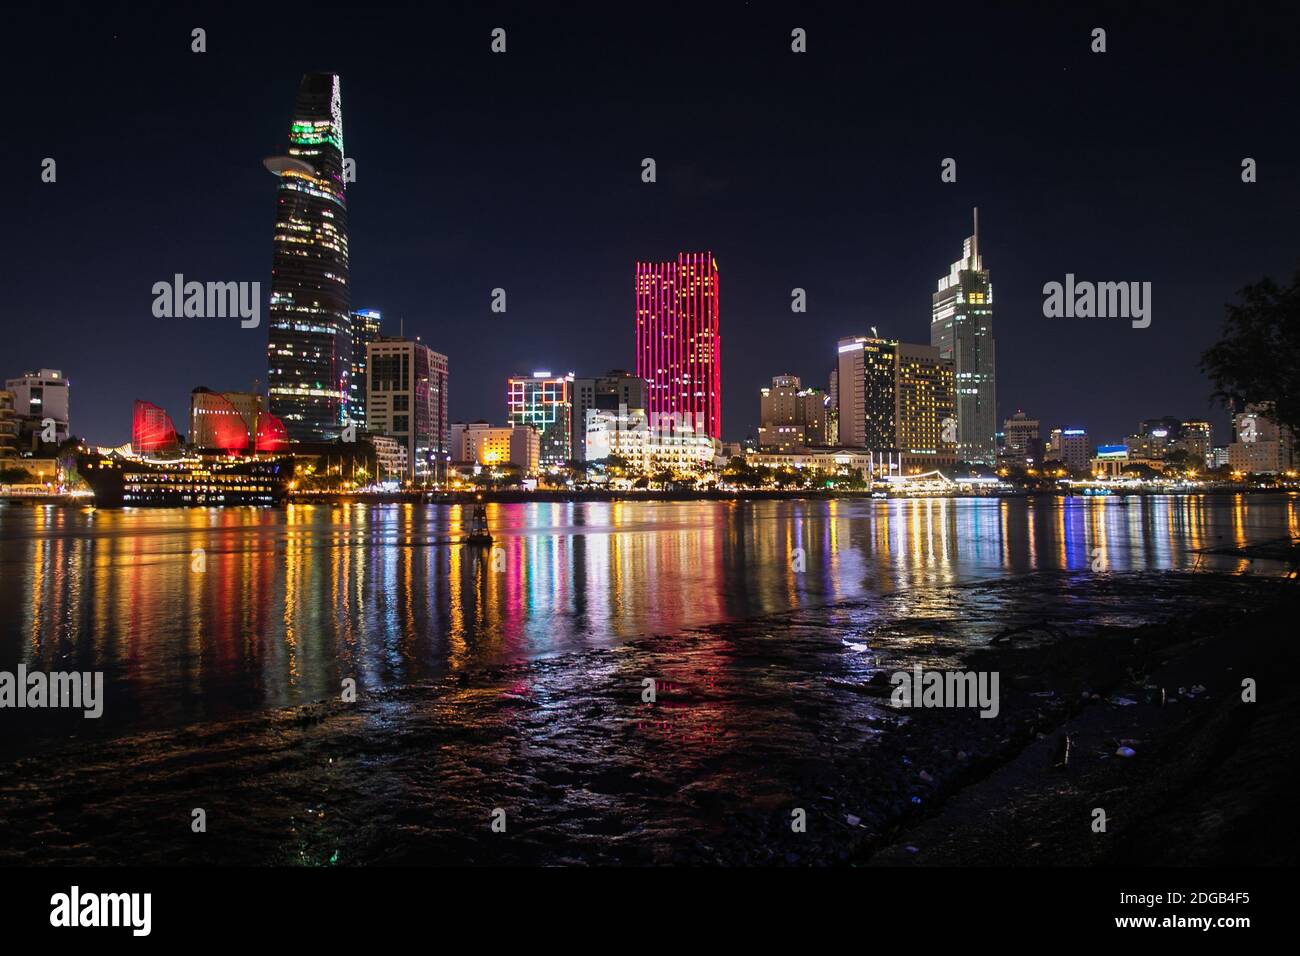 Vista notturna panoramica e colorata dello skyline della città di ho Chi Minh riflessa sul fiume Saigon. I grattacieli e gli edifici moderni si trovano nel quartiere 1. Foto Stock